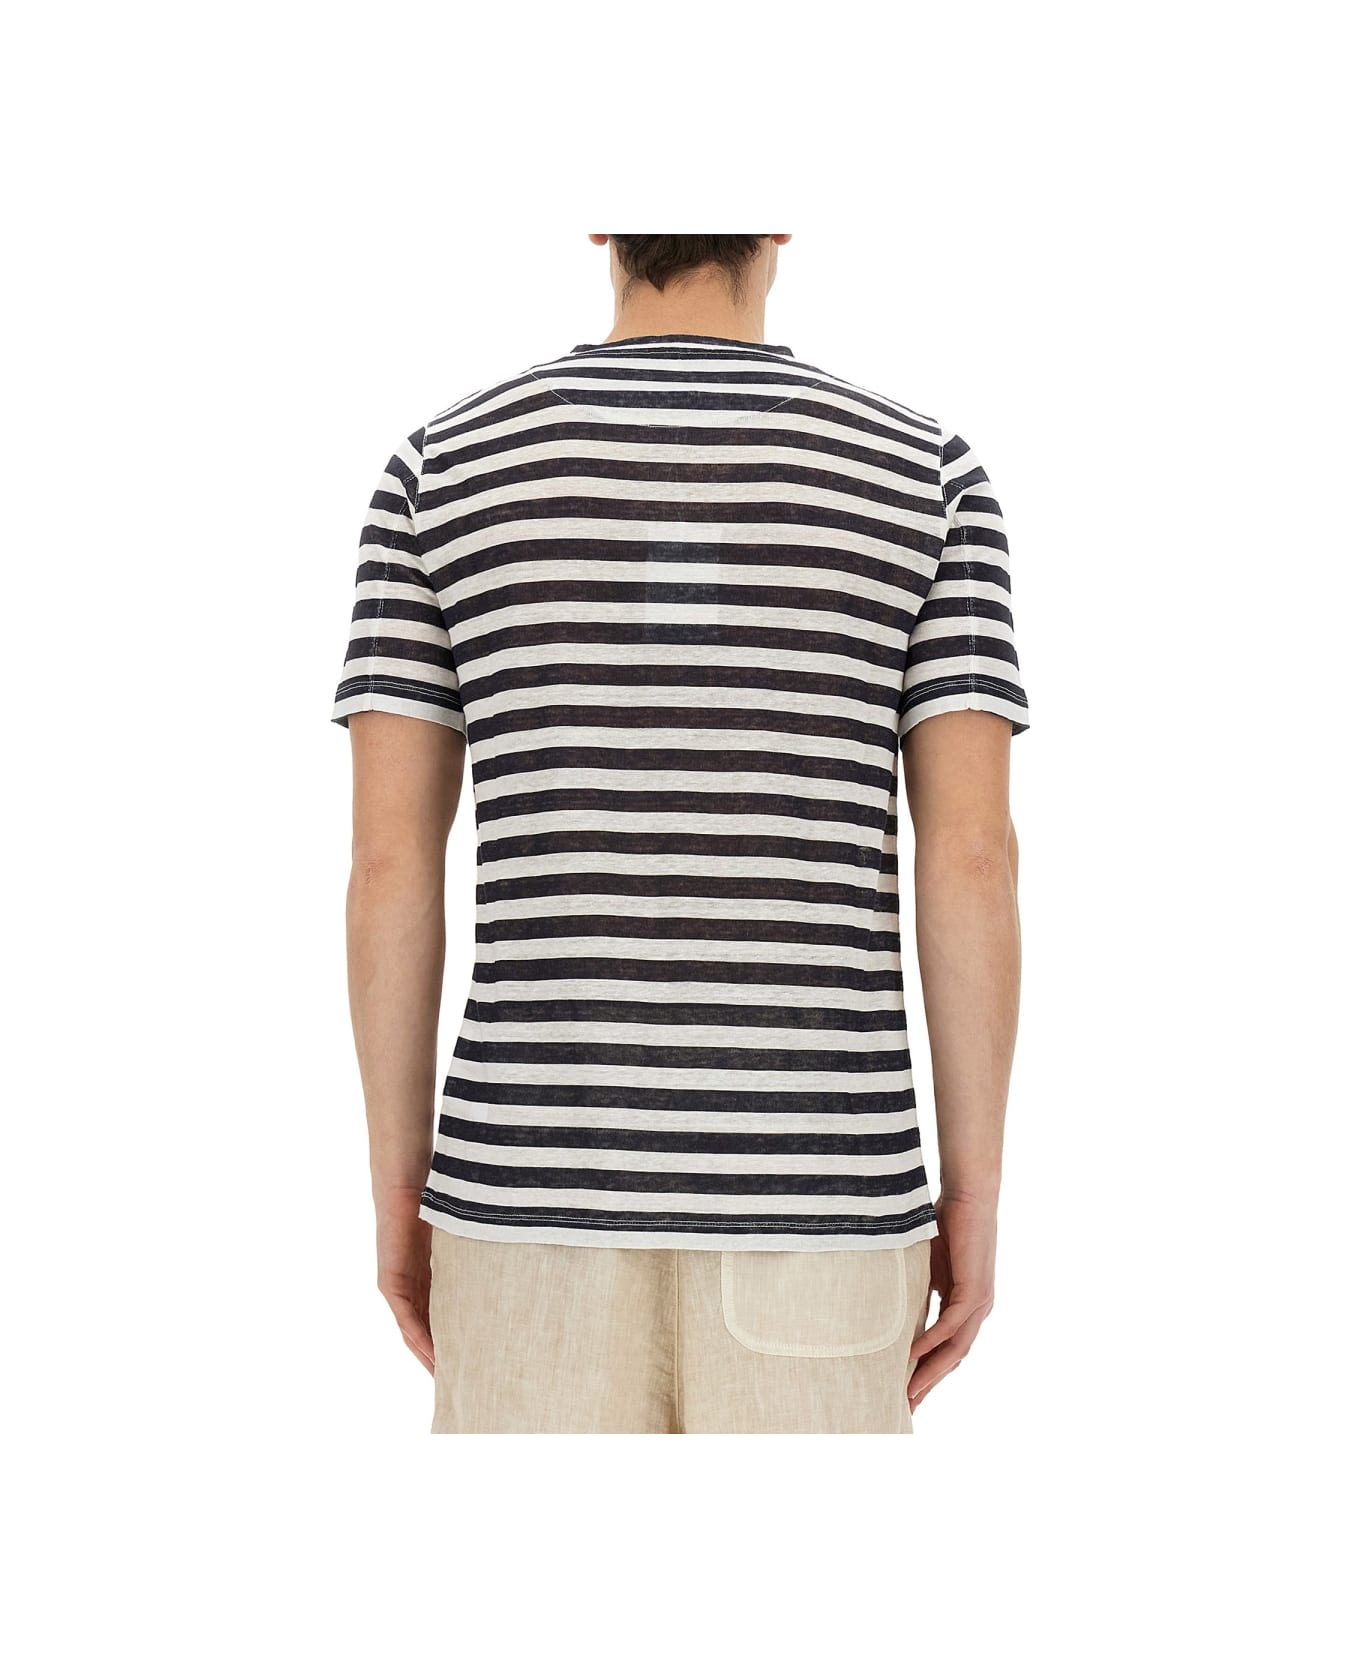 120% Lino Striped T-shirt - MULTICOLOUR